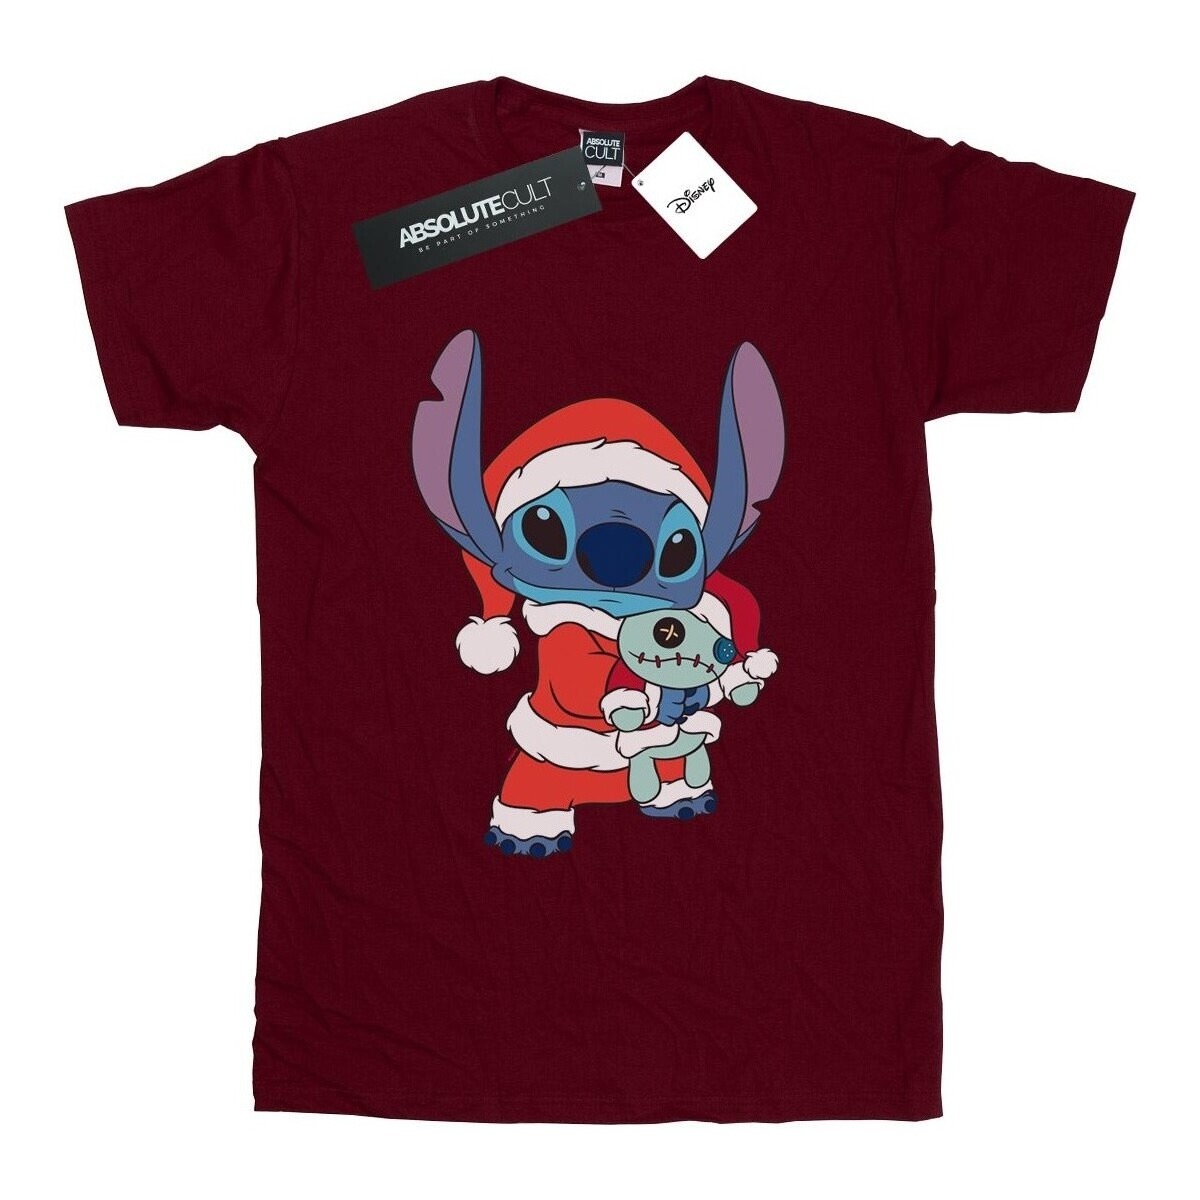 Vêtements Femme T-shirts manches longues Disney Lilo And Stitch Stitch Christmas Multicolore